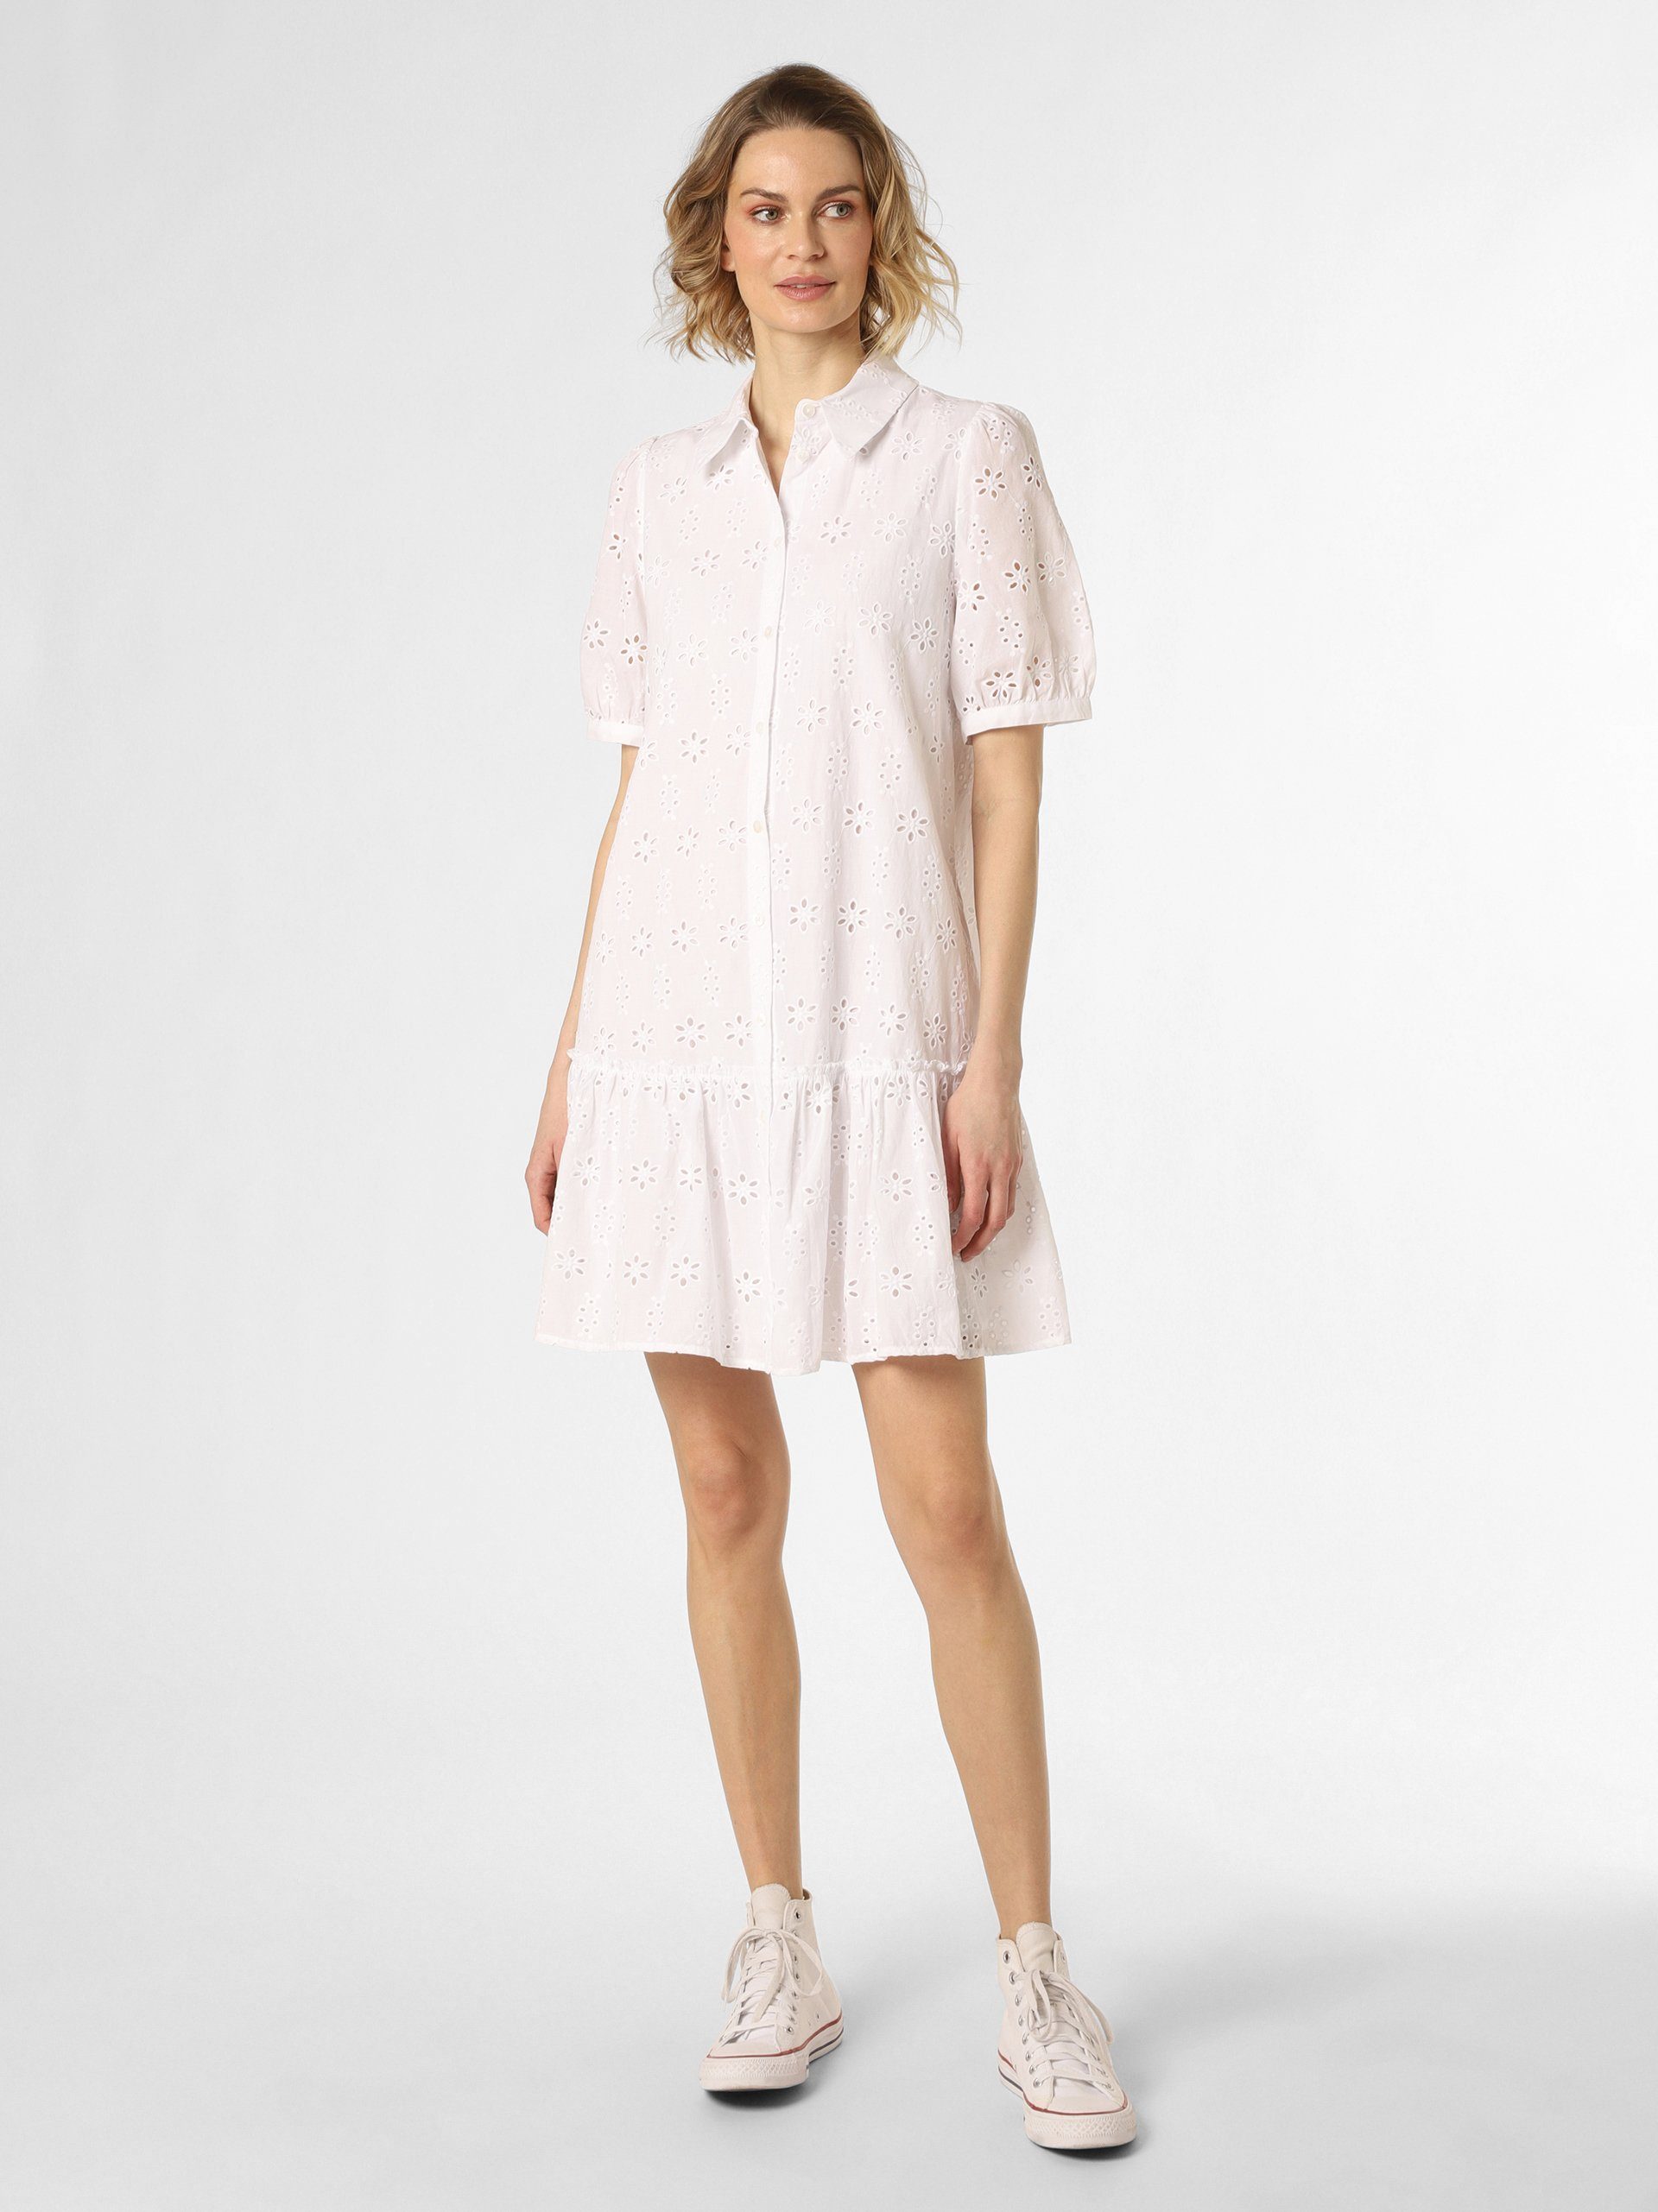 Marie Lund A-Linien-Kleid | Sommerkleider